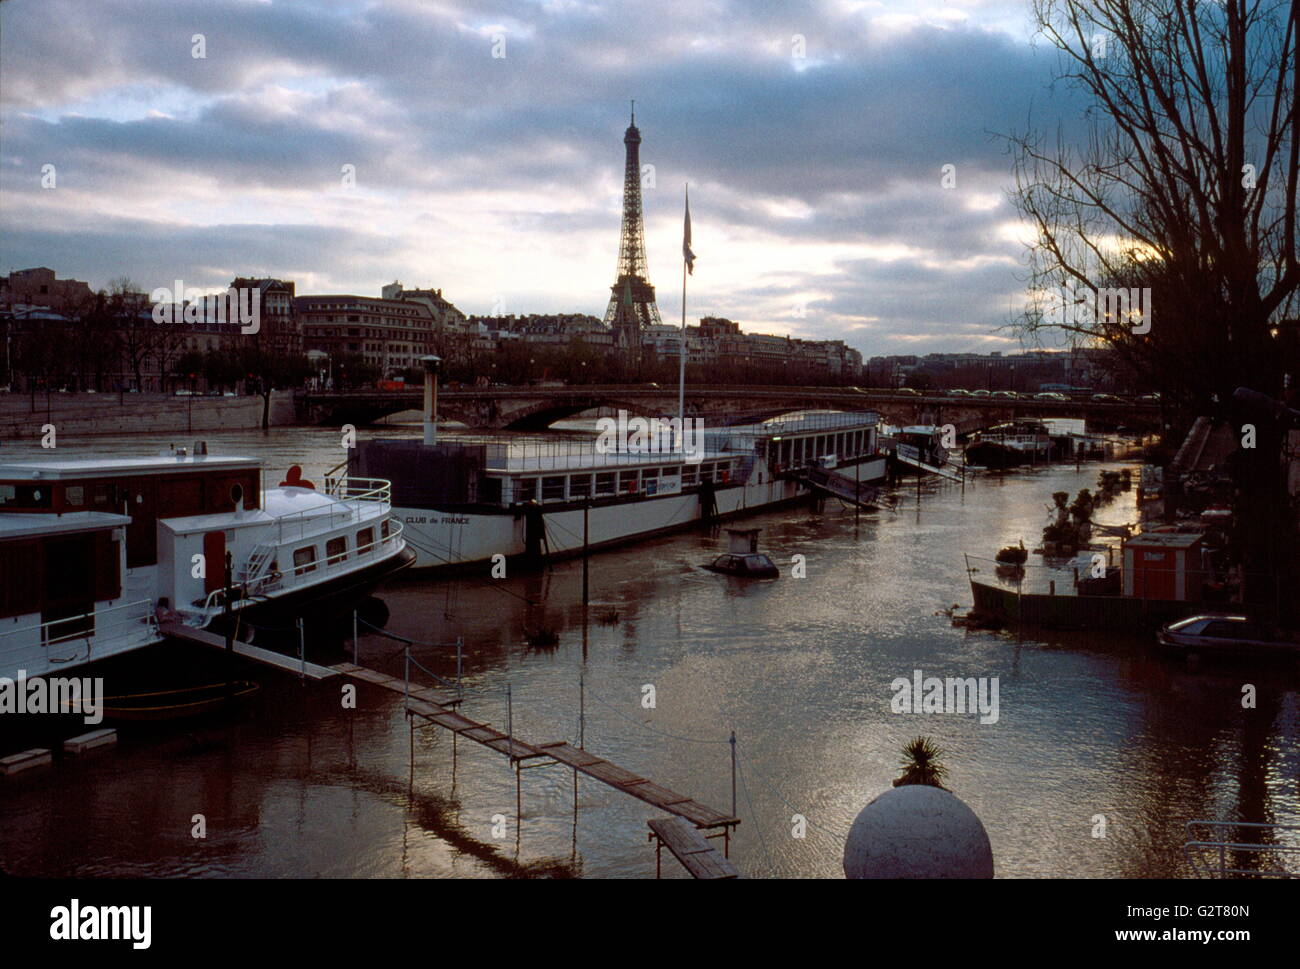 AJAXNETPHOTO. L'année 2001. PARIS, FRANCE. - La Seine en crue, de la Tour Eiffel au loin. PHOTO:JONATHAN EASTLAND/AJAX REF:101356 Banque D'Images